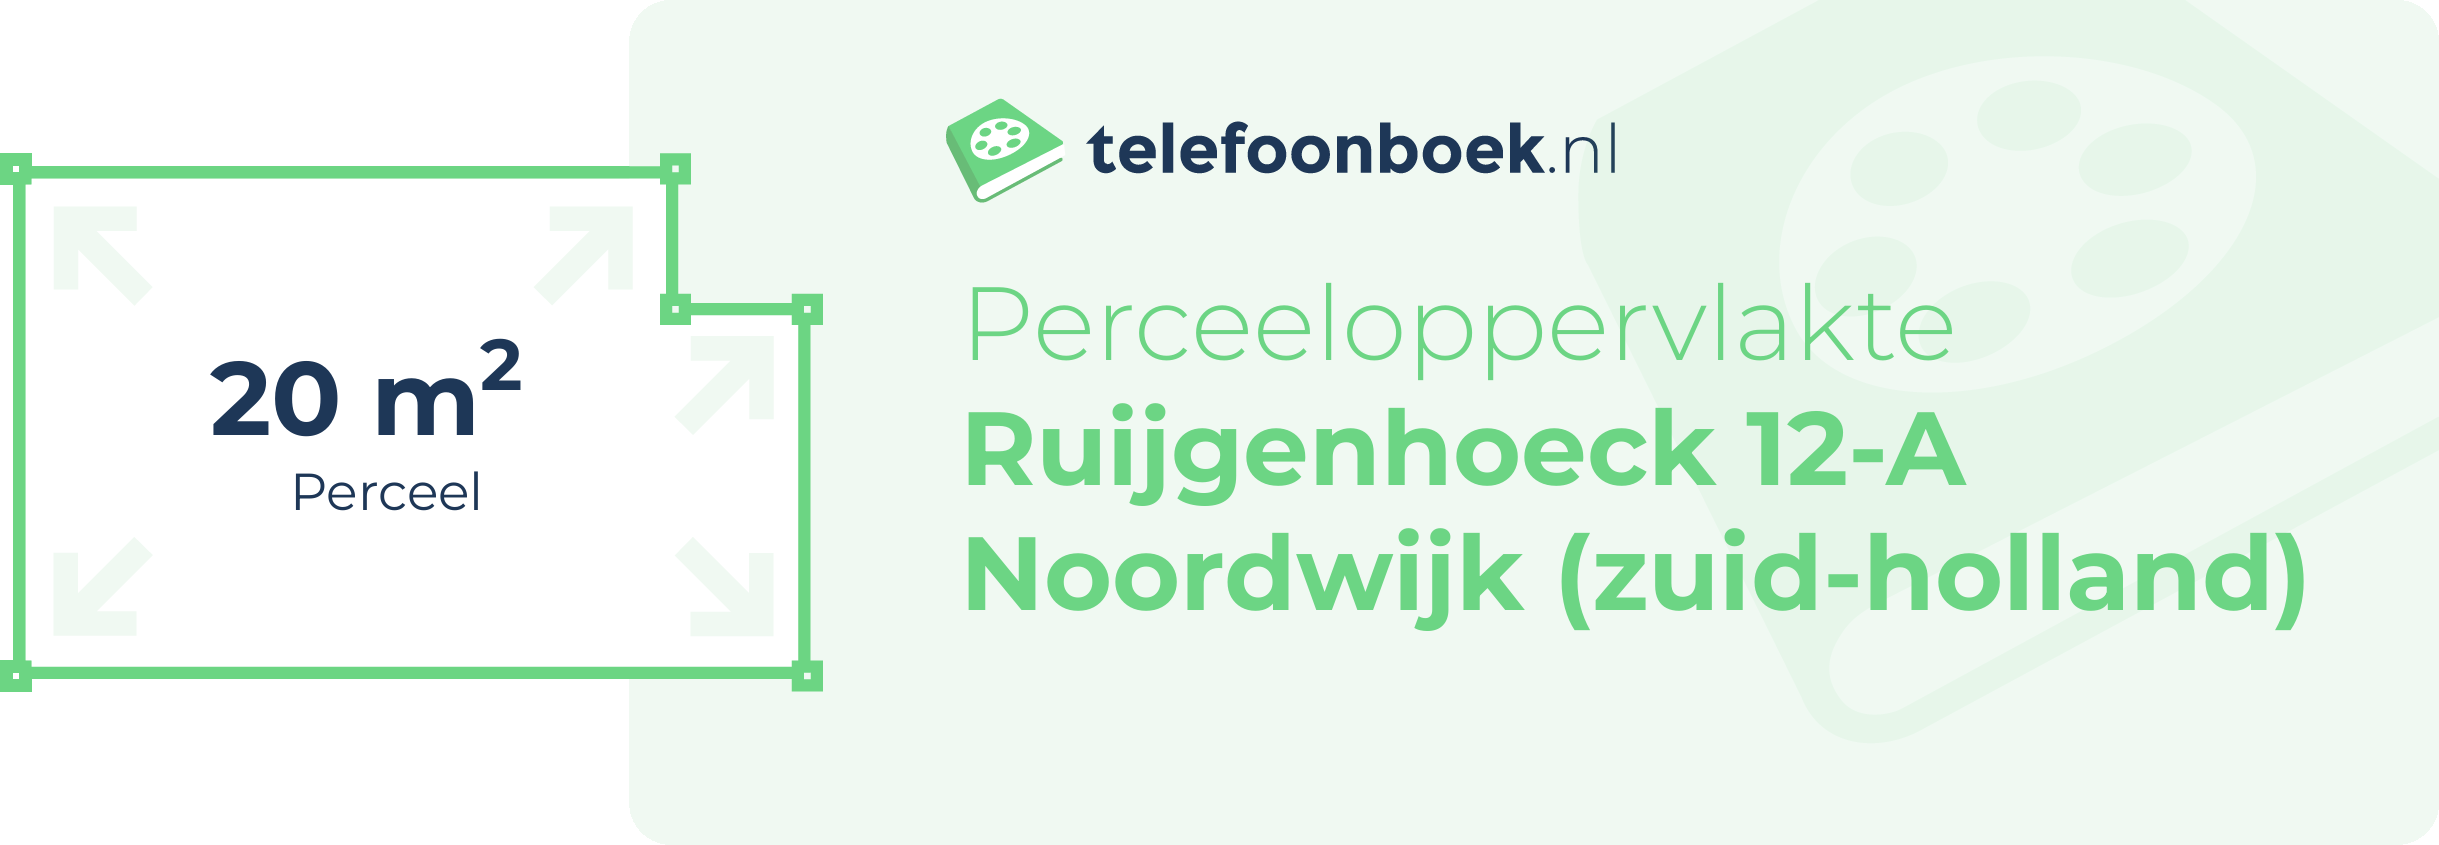 Perceeloppervlakte Ruijgenhoeck 12-A Noordwijk (Zuid-Holland)